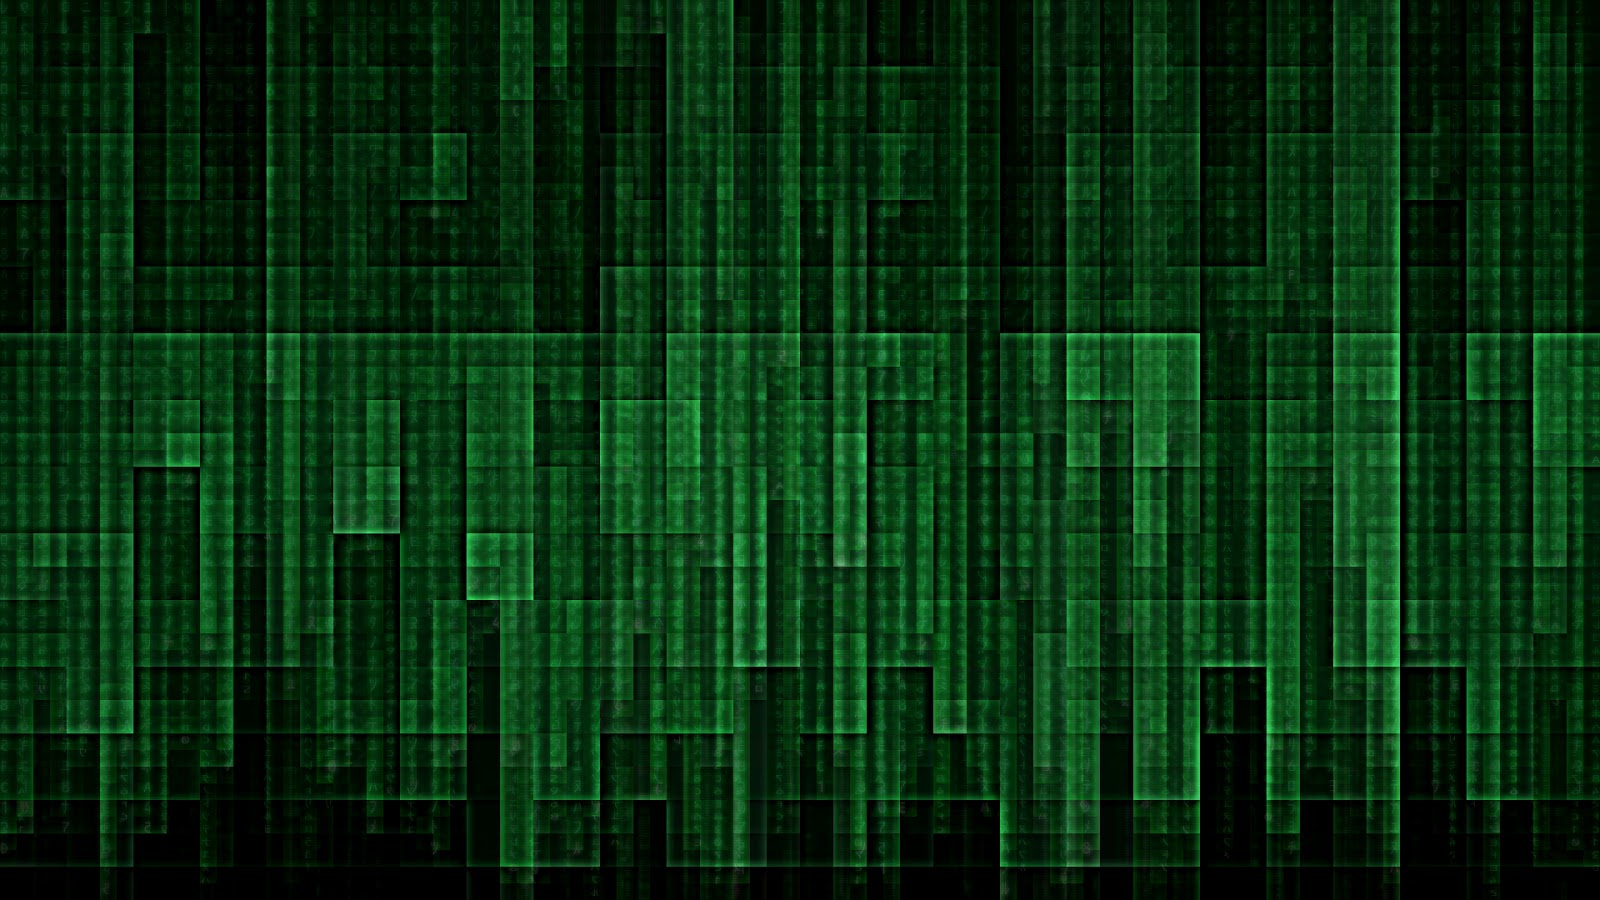 Hacking Wallpaper Gif Awesome looking matrix hacking